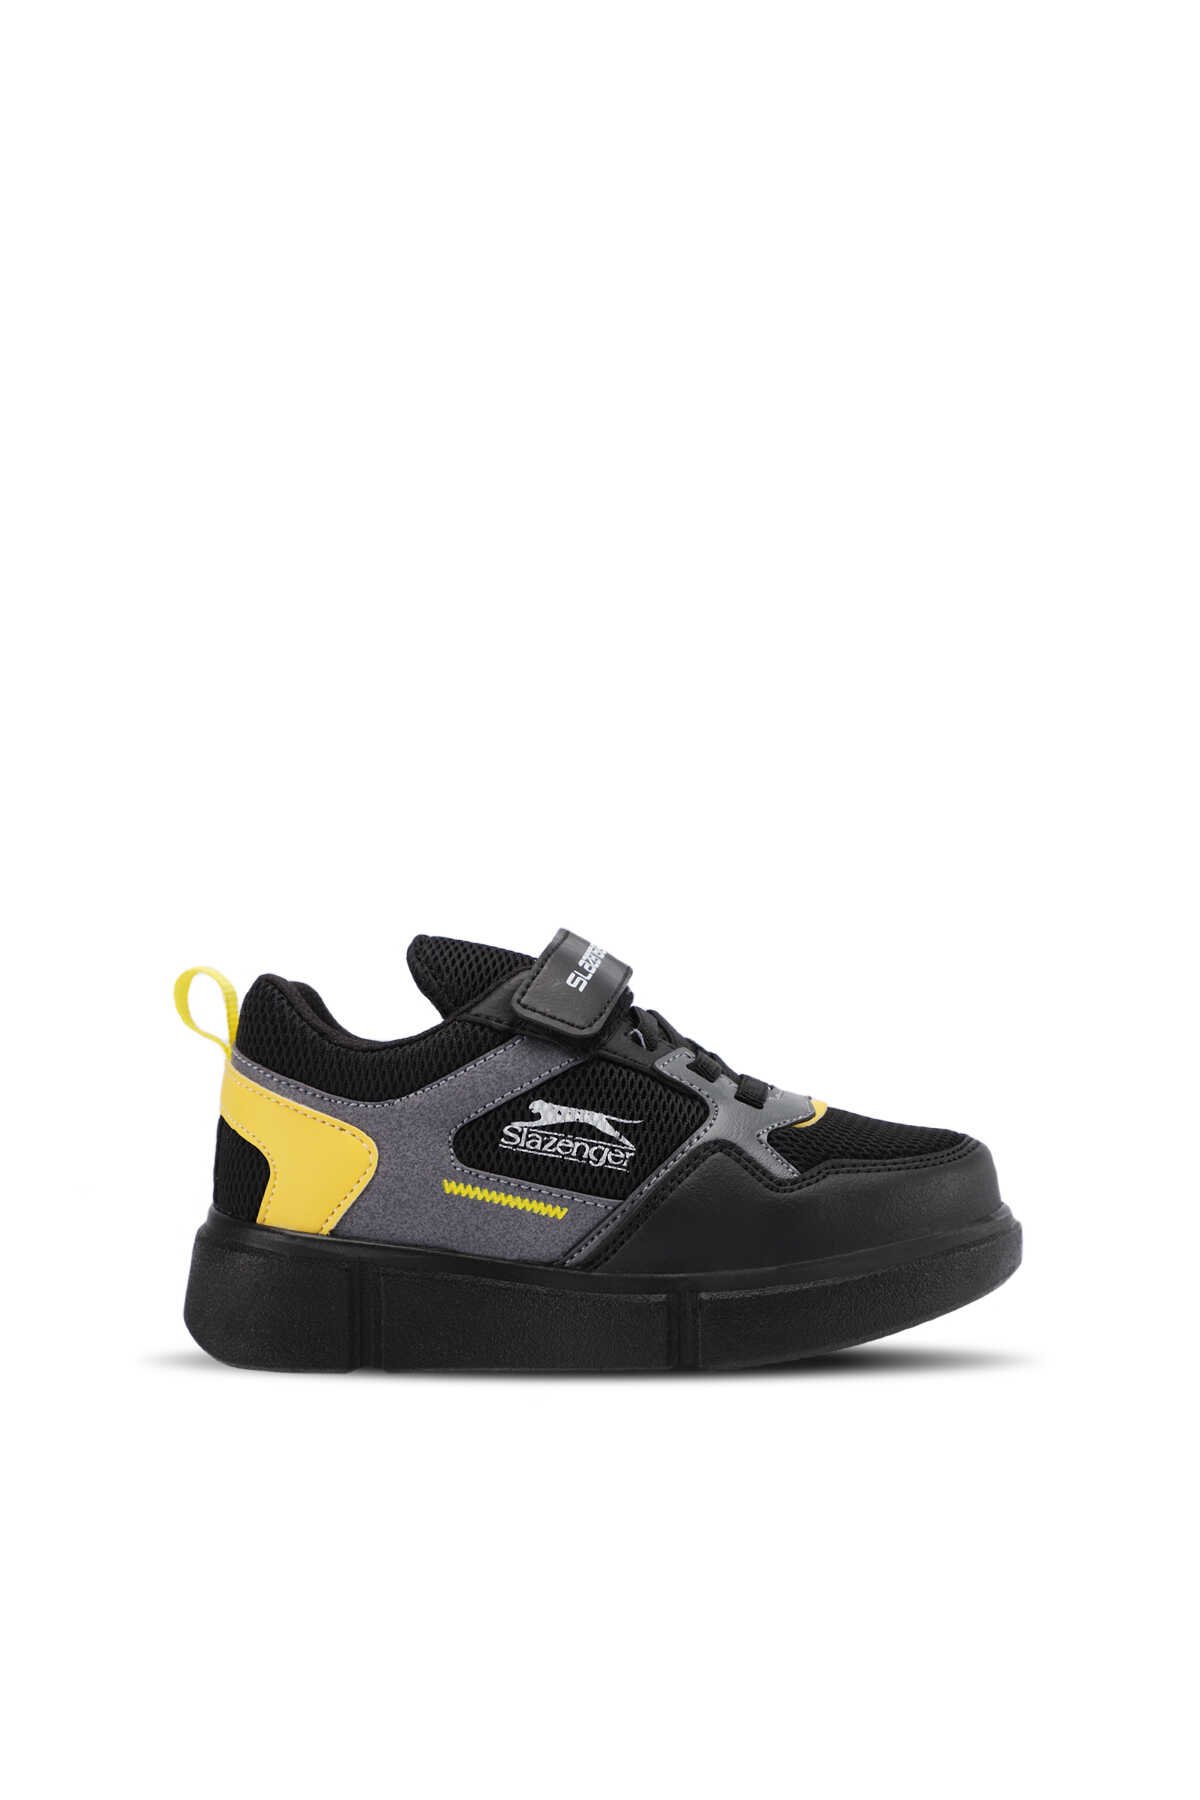 Slazenger - Slazenger KAZUE Sneaker Erkek Çocuk Ayakkabı Siyah / Siyah